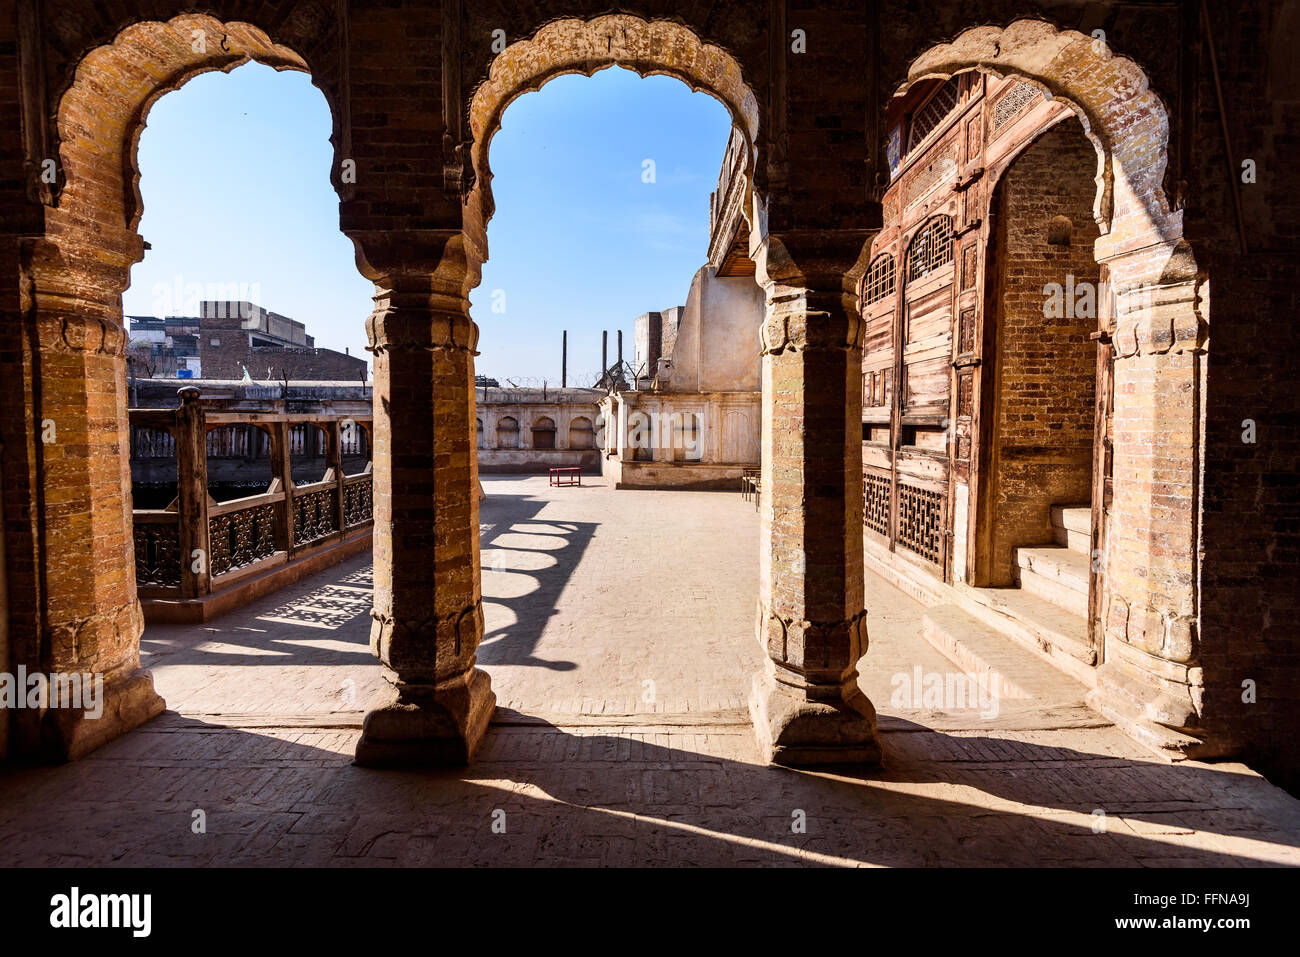 Les arches de sethi house situé dans la ville fortifiée de Peshawar, Pakistan. Banque D'Images